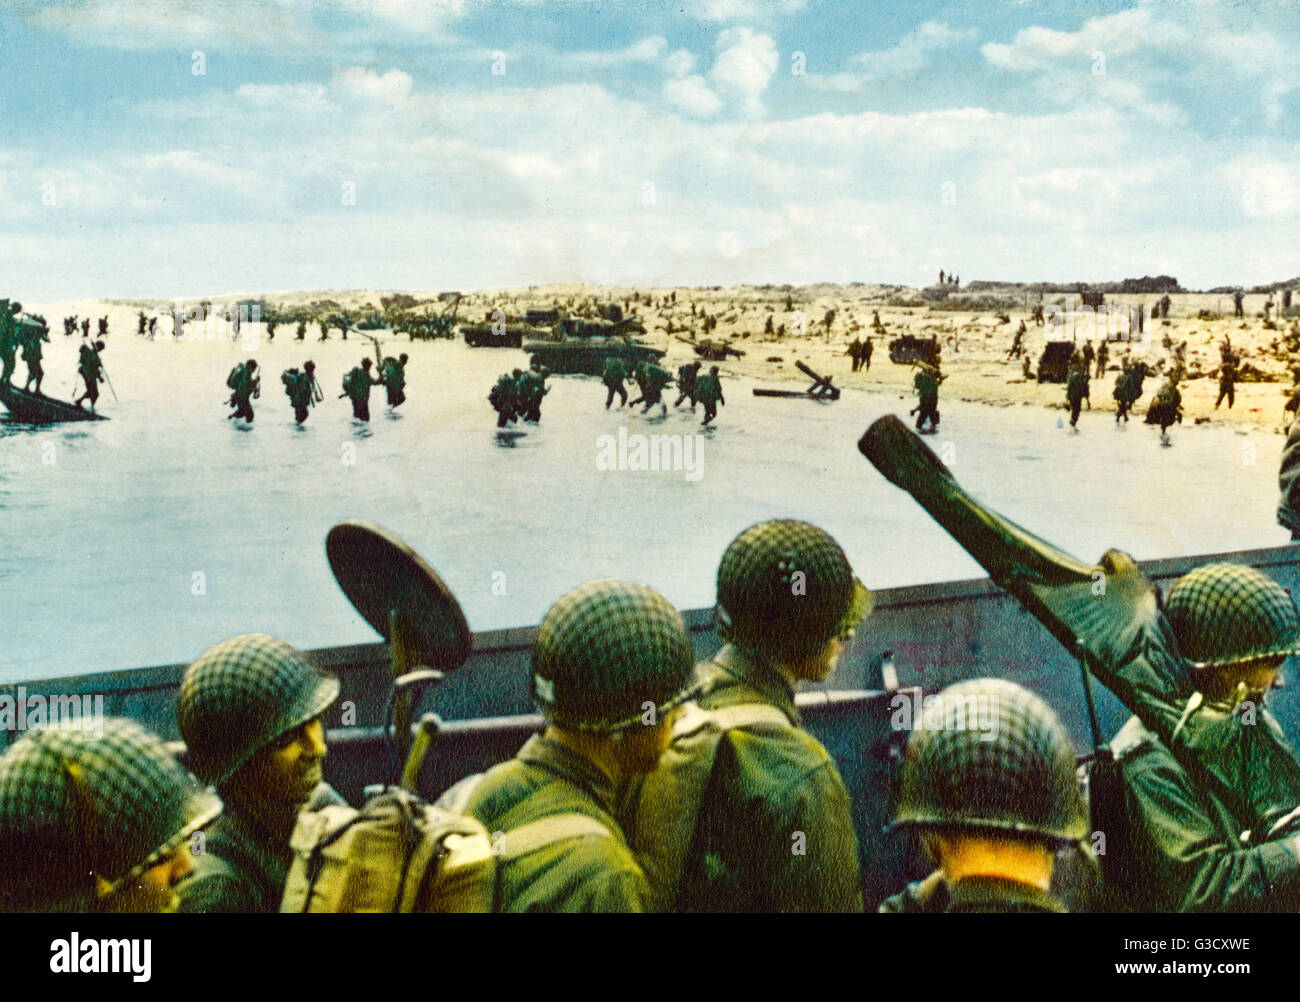 Landung in der Normandie 6. Juni 1944 - WW2. Beachten Sie die amerikanische Soldaten in die Landungsboote hält einen Metalldetektor für Landminen zu fegen.     Datum: 1944 Stockfoto